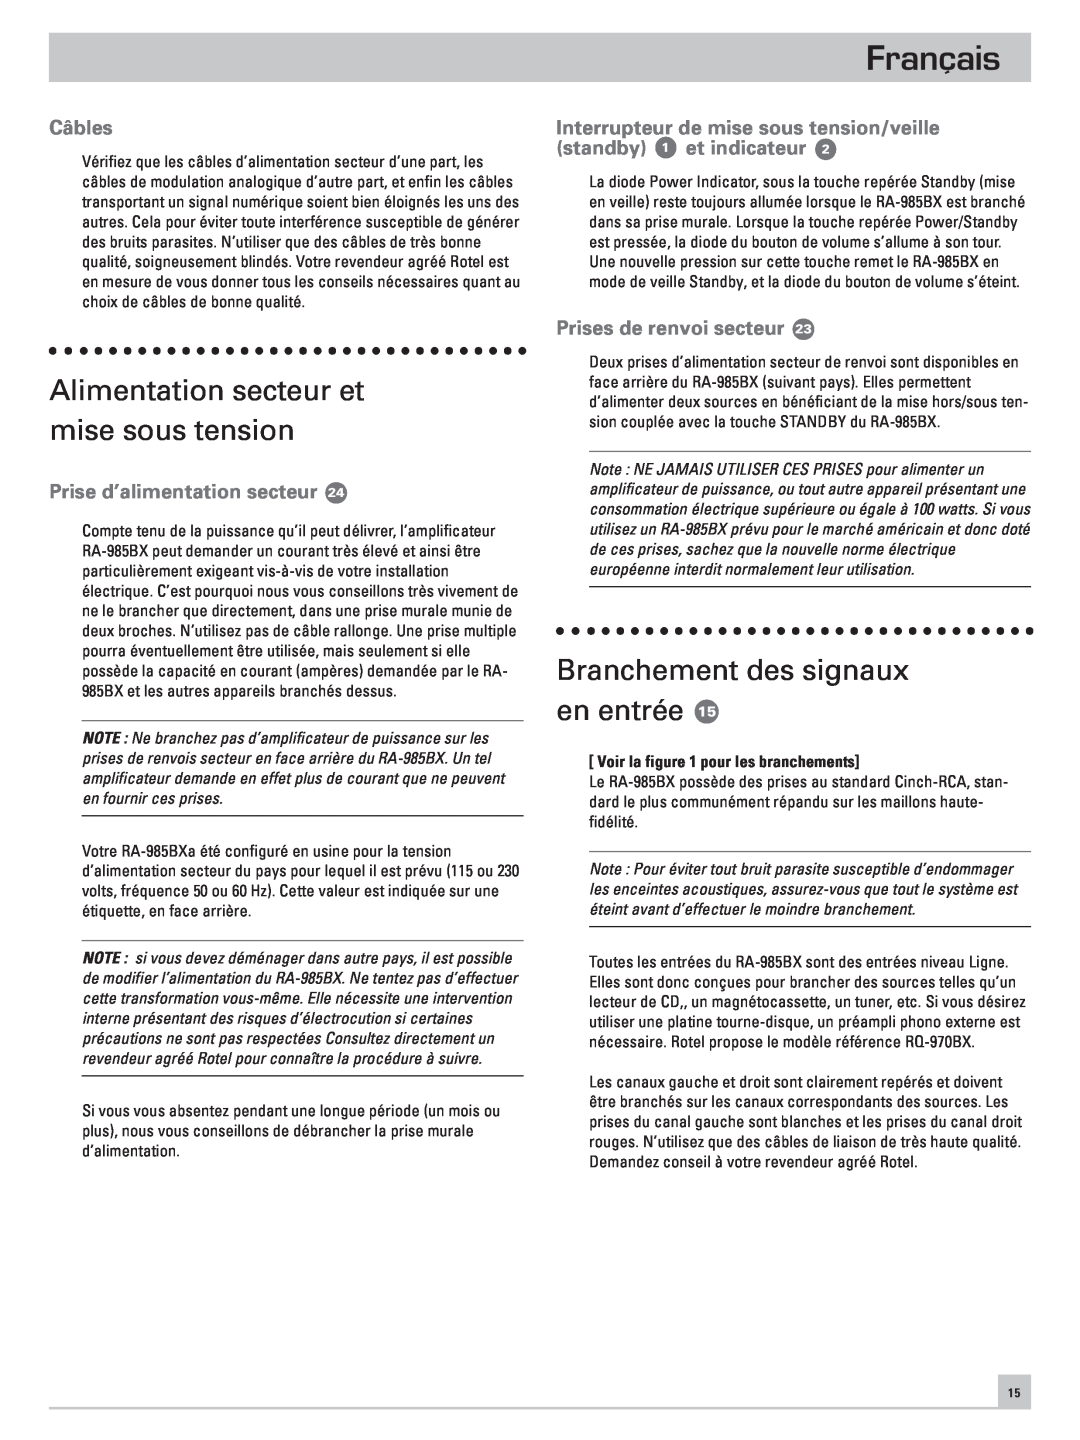 Rotel RA-985BX owner manual Alimentation secteur et mise sous tension, Branchement des signaux en entrée, Câbles, Français 